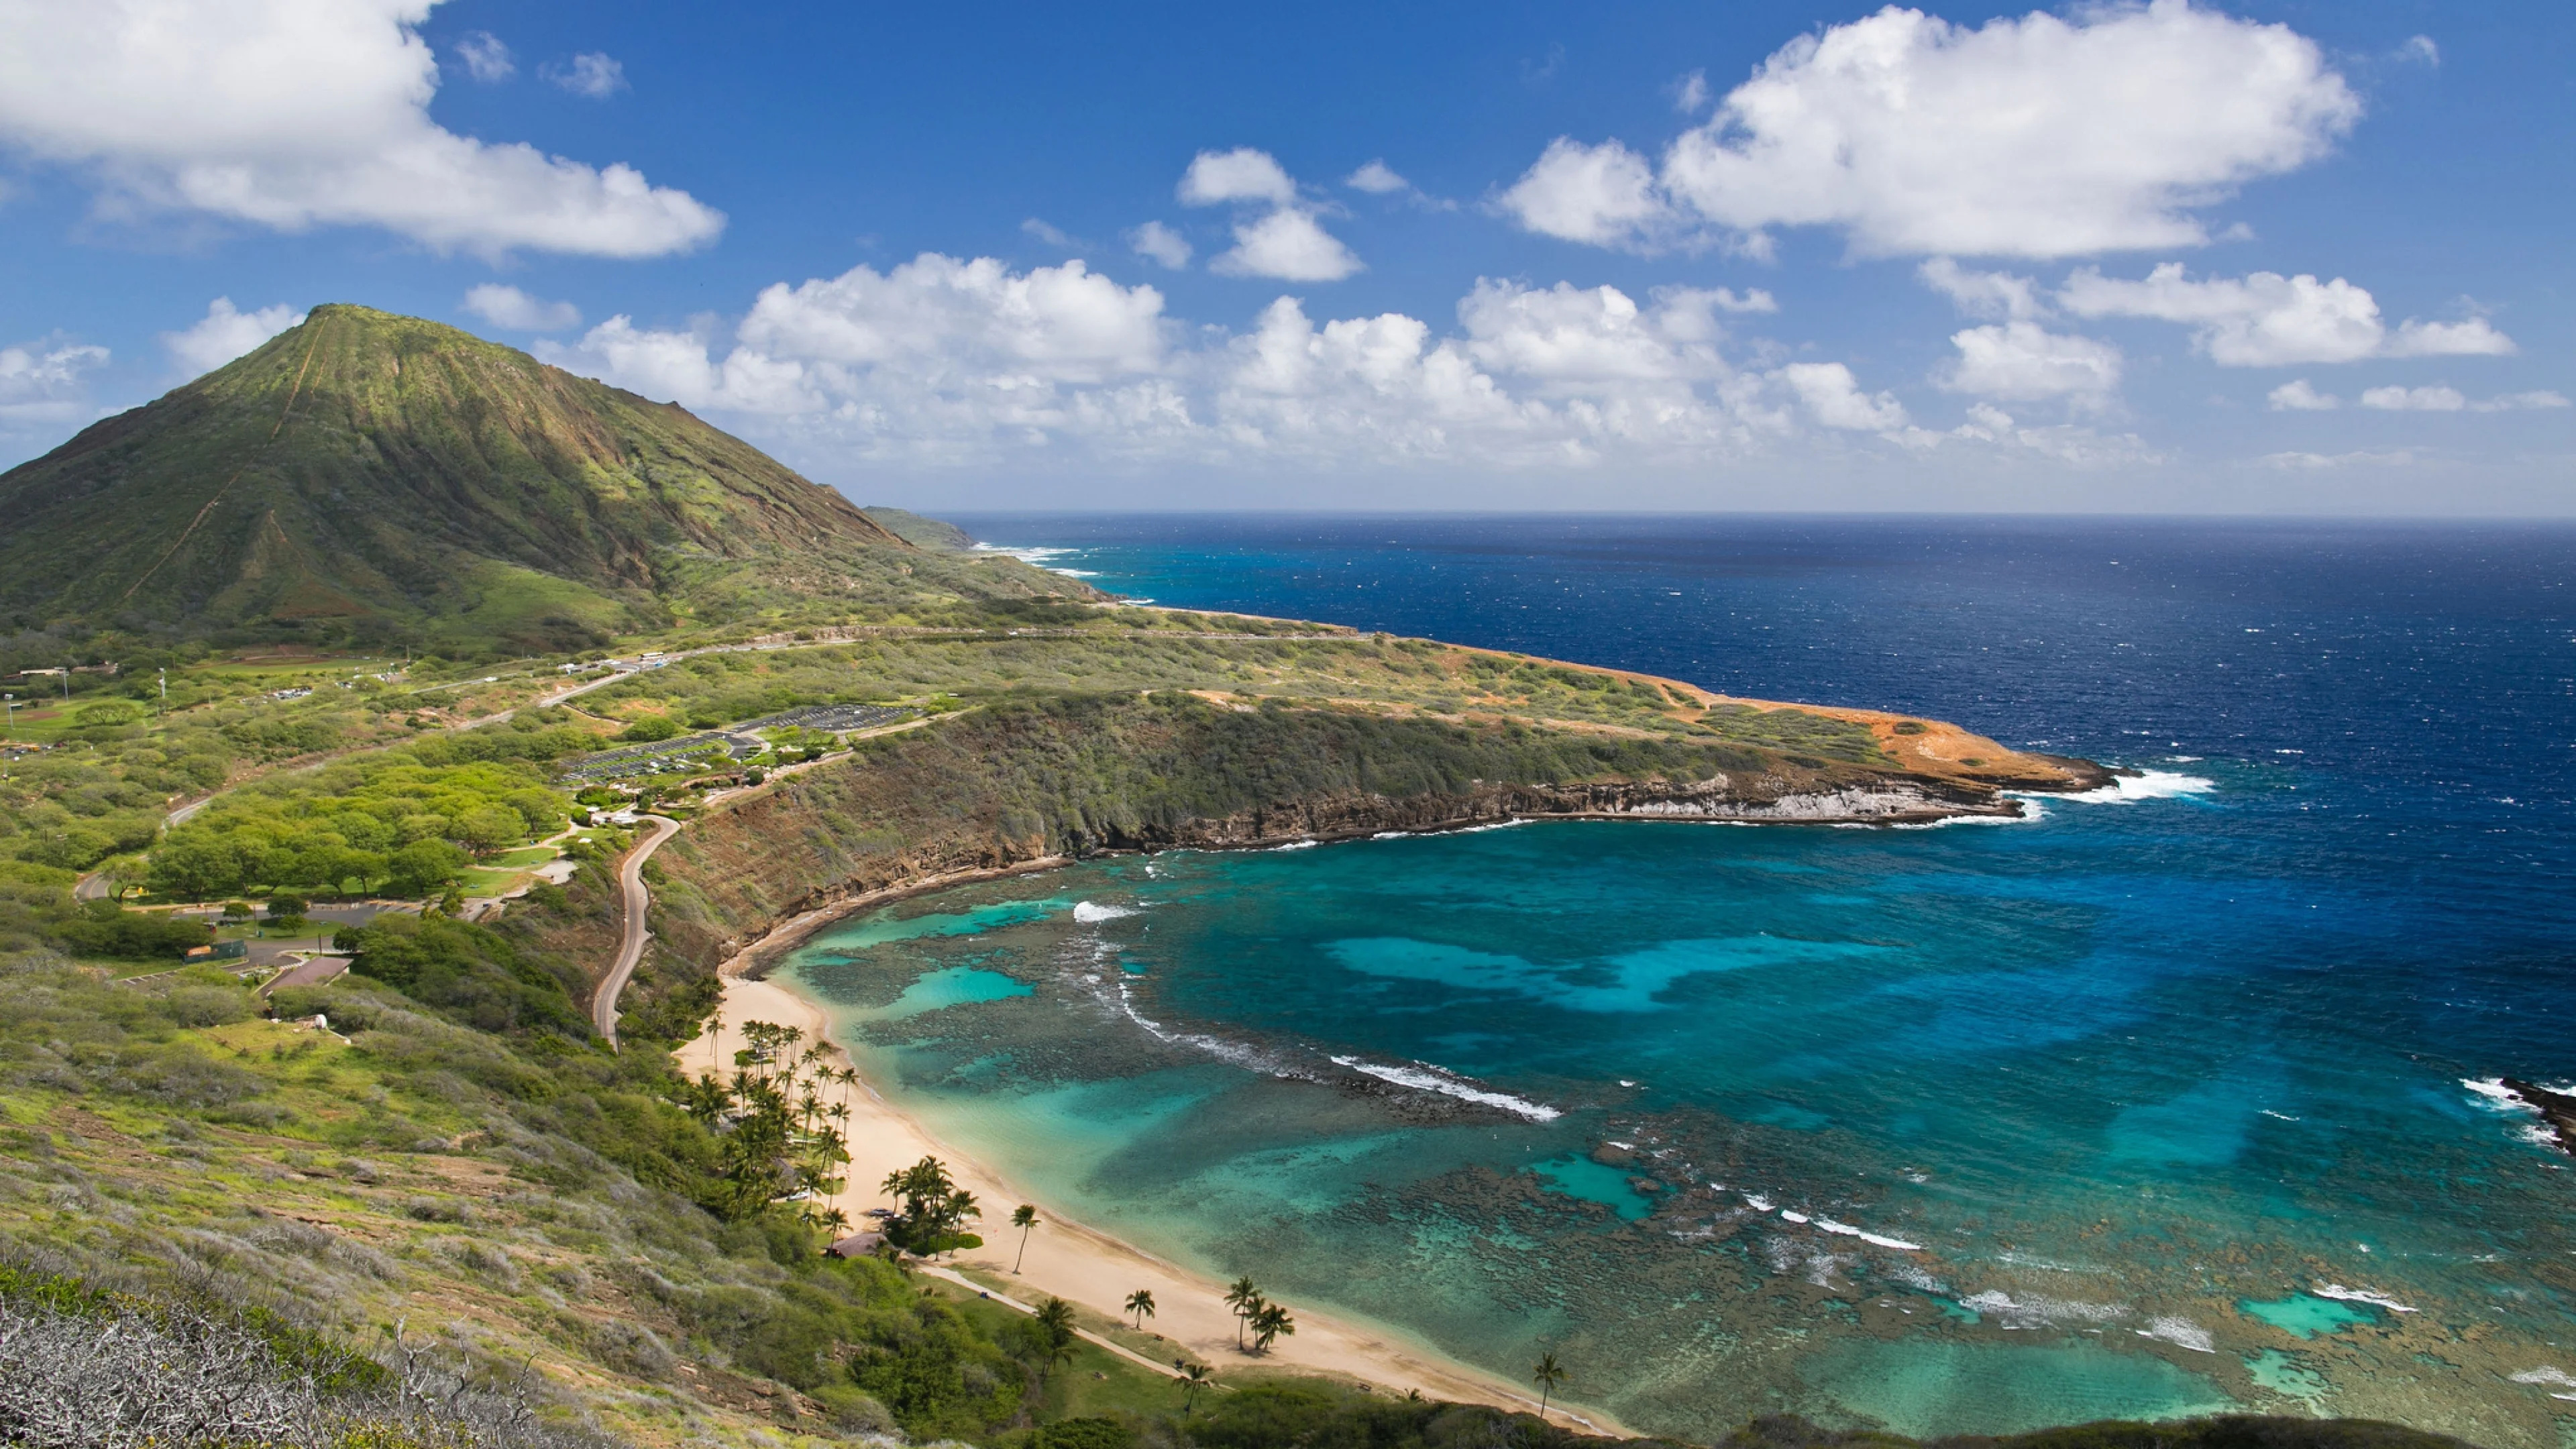 Hanauma Bay, Oahu Island, Hawaii, Hawaii Island, 3840x2160 4K Desktop